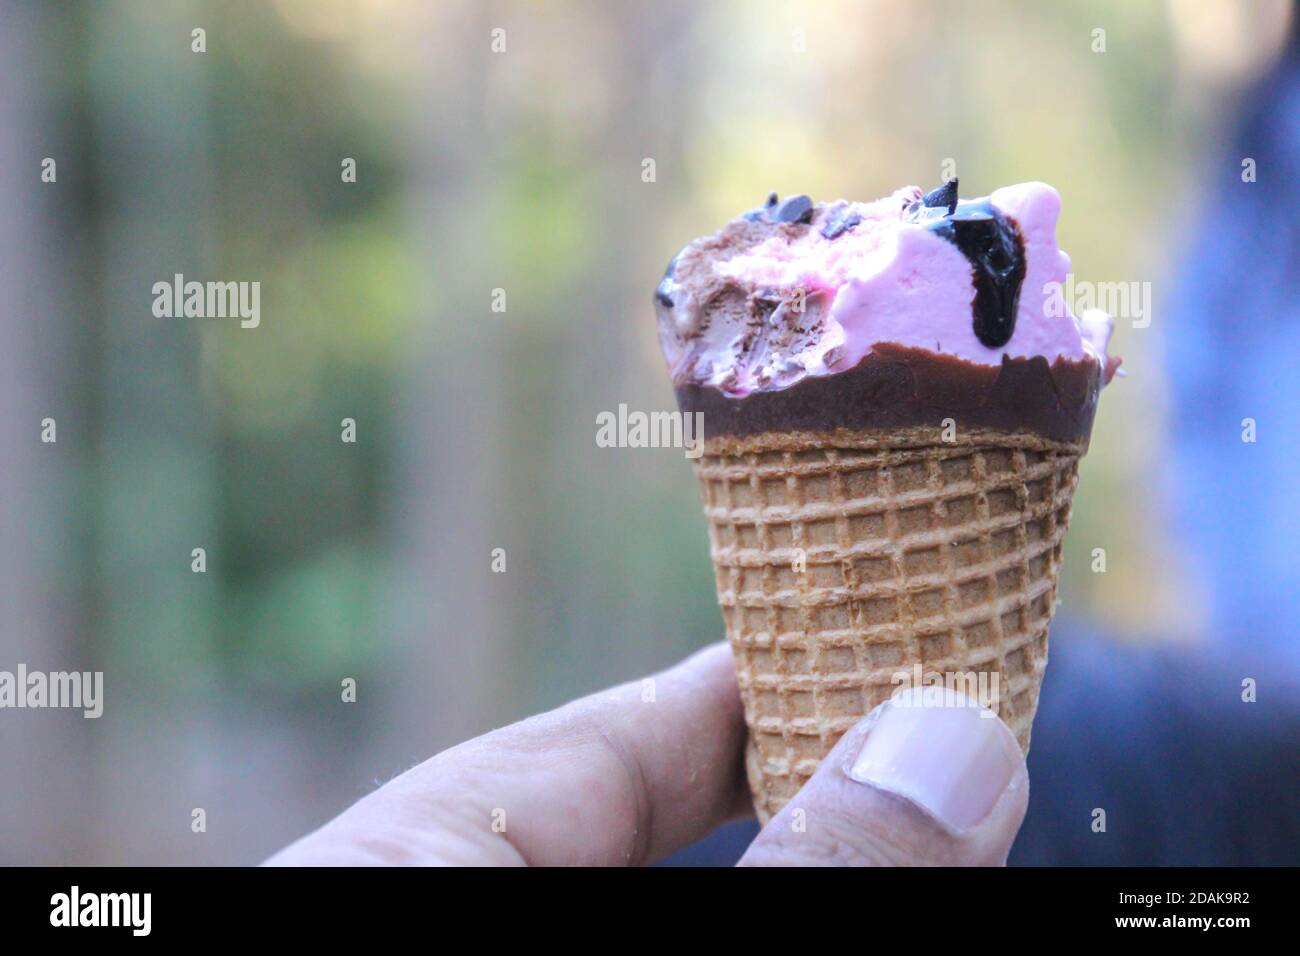 Ice cream on hand Stock Photo